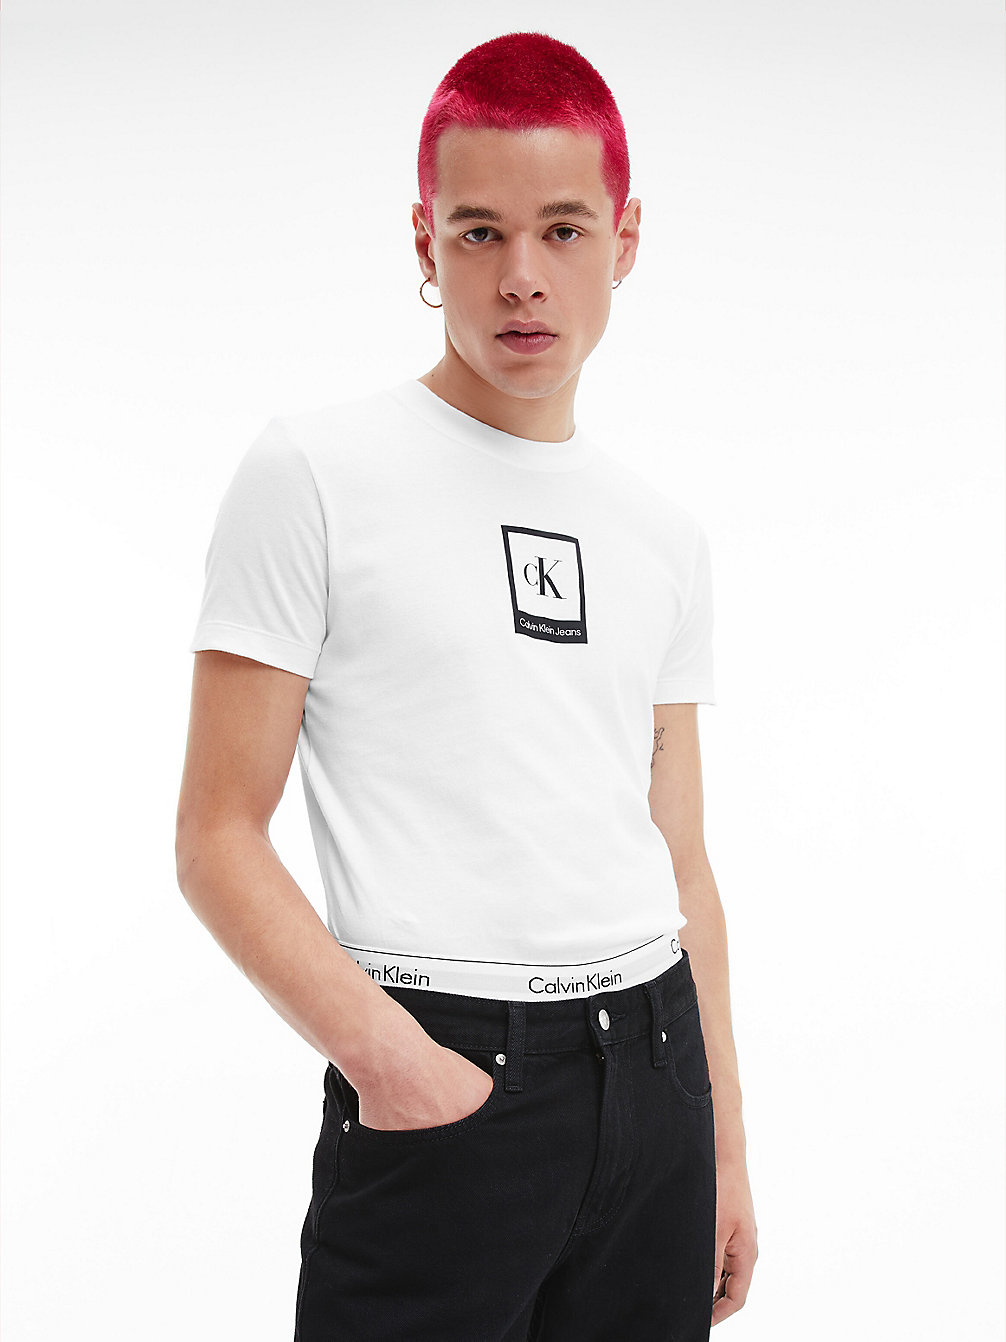 BRIGHT WHITE > Schmales Logo-T-Shirt Aus Bio-Baumwolle > undefined Herren - Calvin Klein